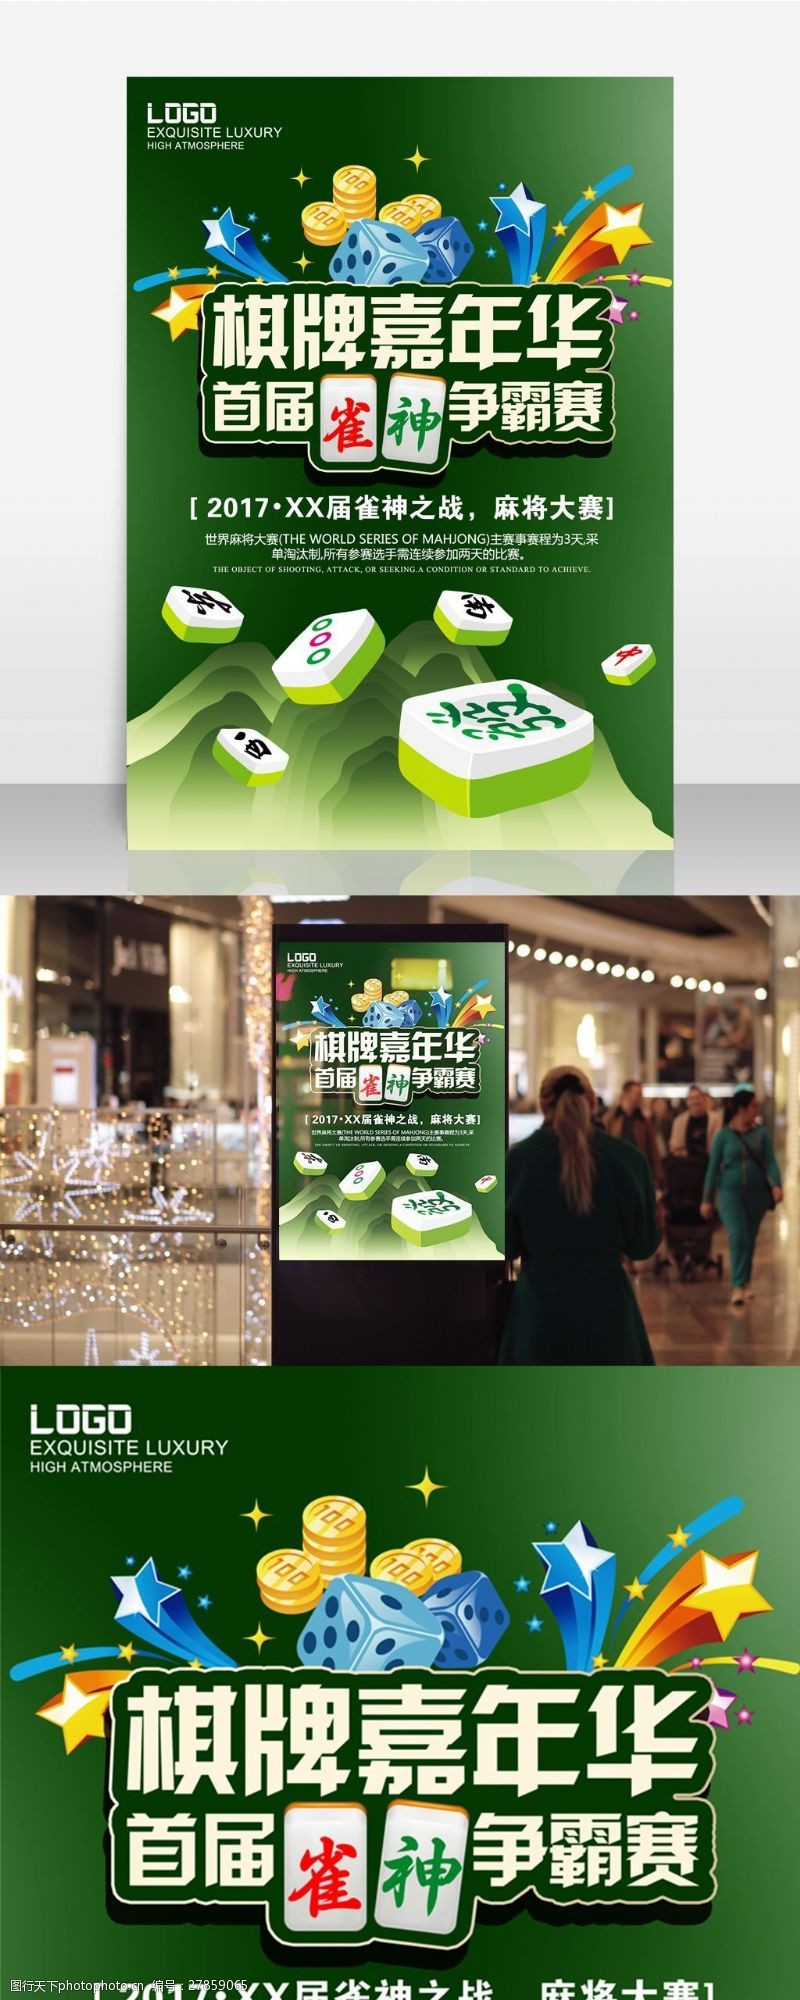 绿色创意麻将馆打麻将比赛海报